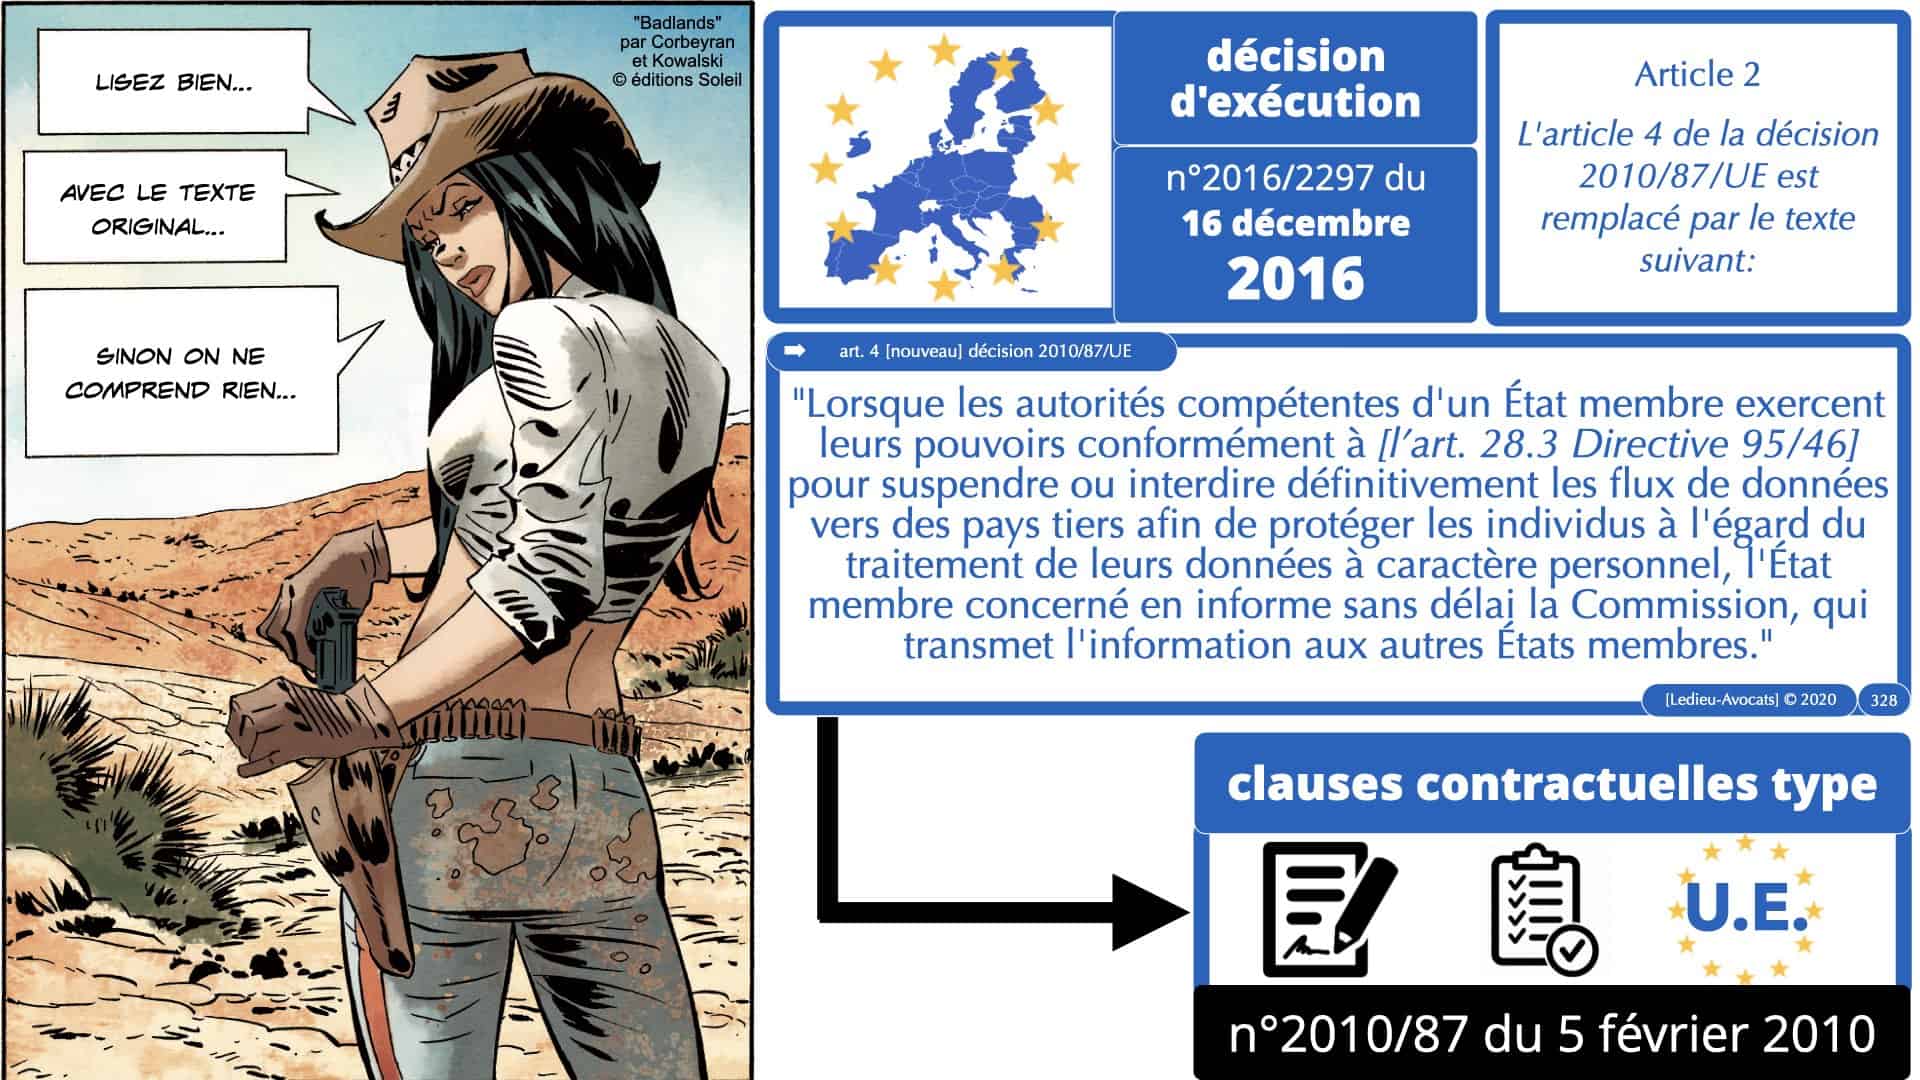 RGPD e-Privacy données personnelles jurisprudence formation Lamy Les Echos 10-02-2021 ©Ledieu-Avocats.328